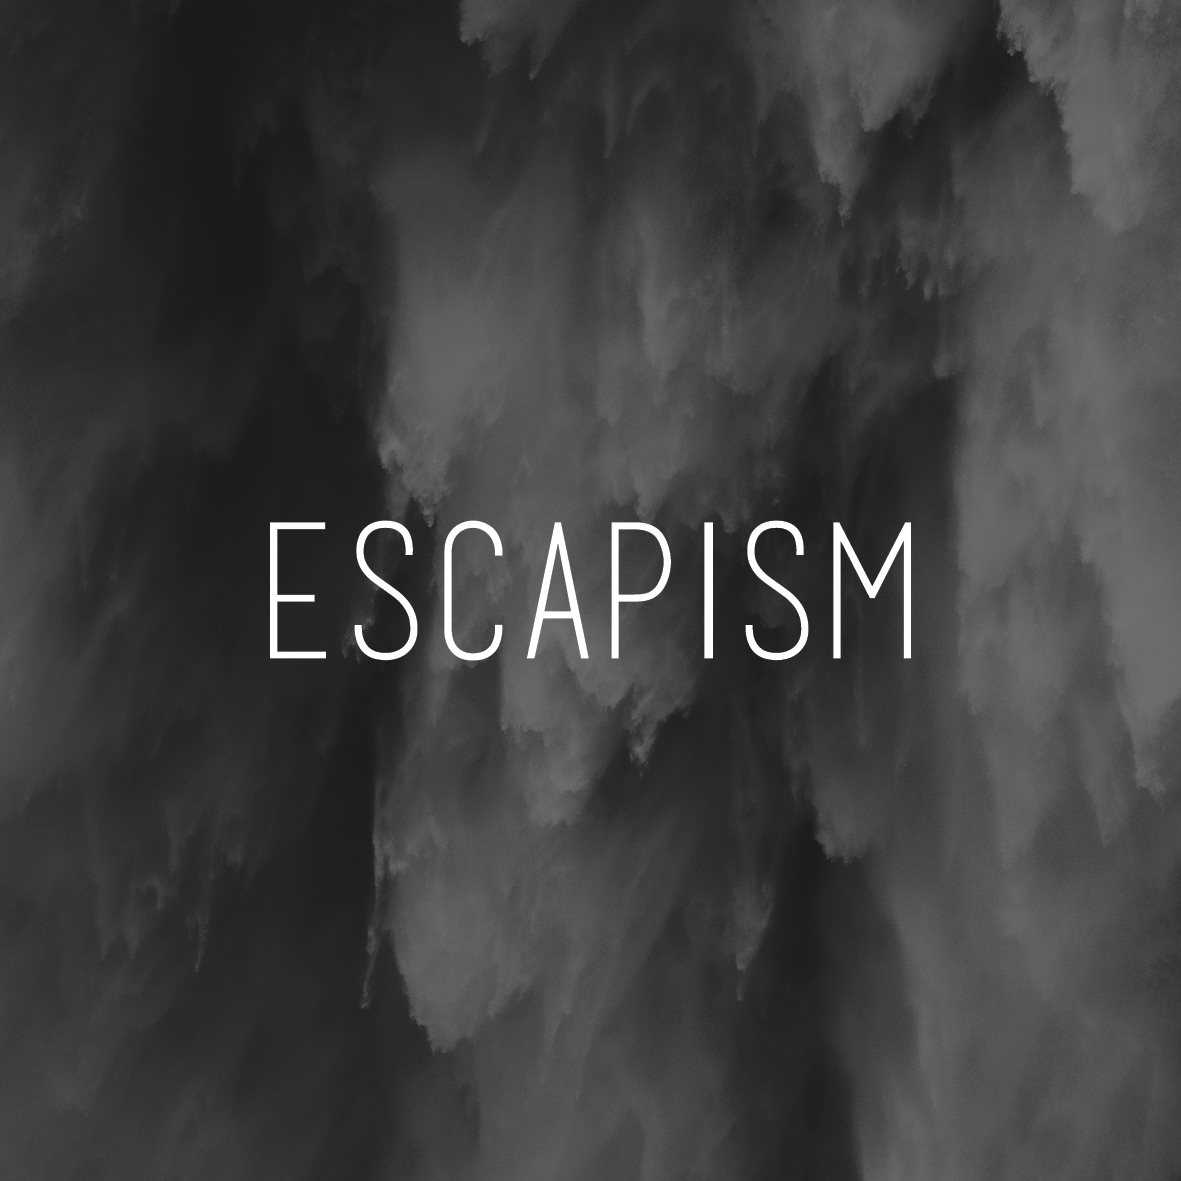 Эскапизм - что это такое, как избавиться от эскапизма?